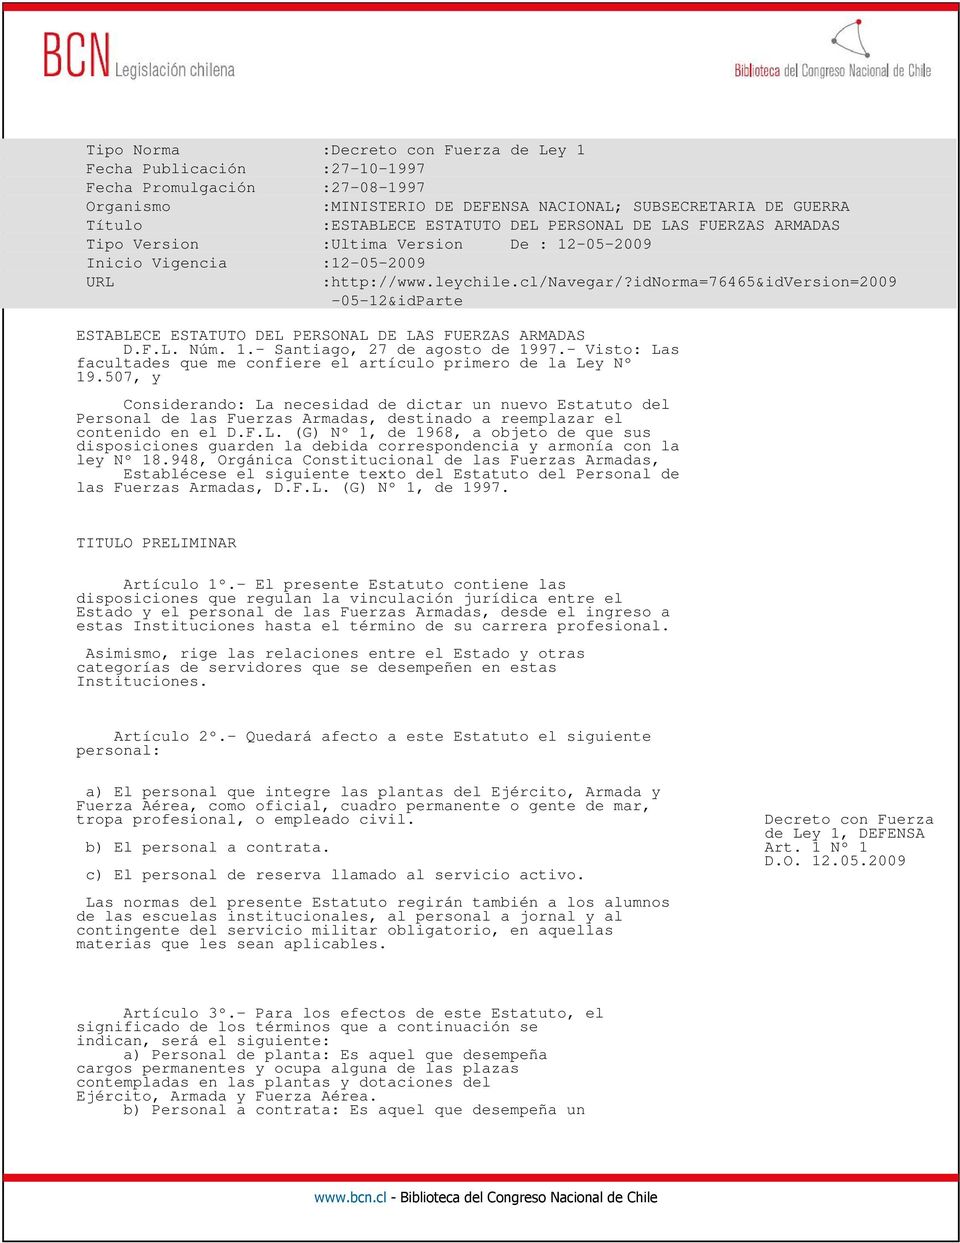 idnorma=76465&idversion=2009-05-12&idparte ESTABLECE ESTATUTO DEL PERSONAL DE LAS FUERZAS ARMADAS D.F.L. Núm. 1.- Santiago, 27 de agosto de 1997.